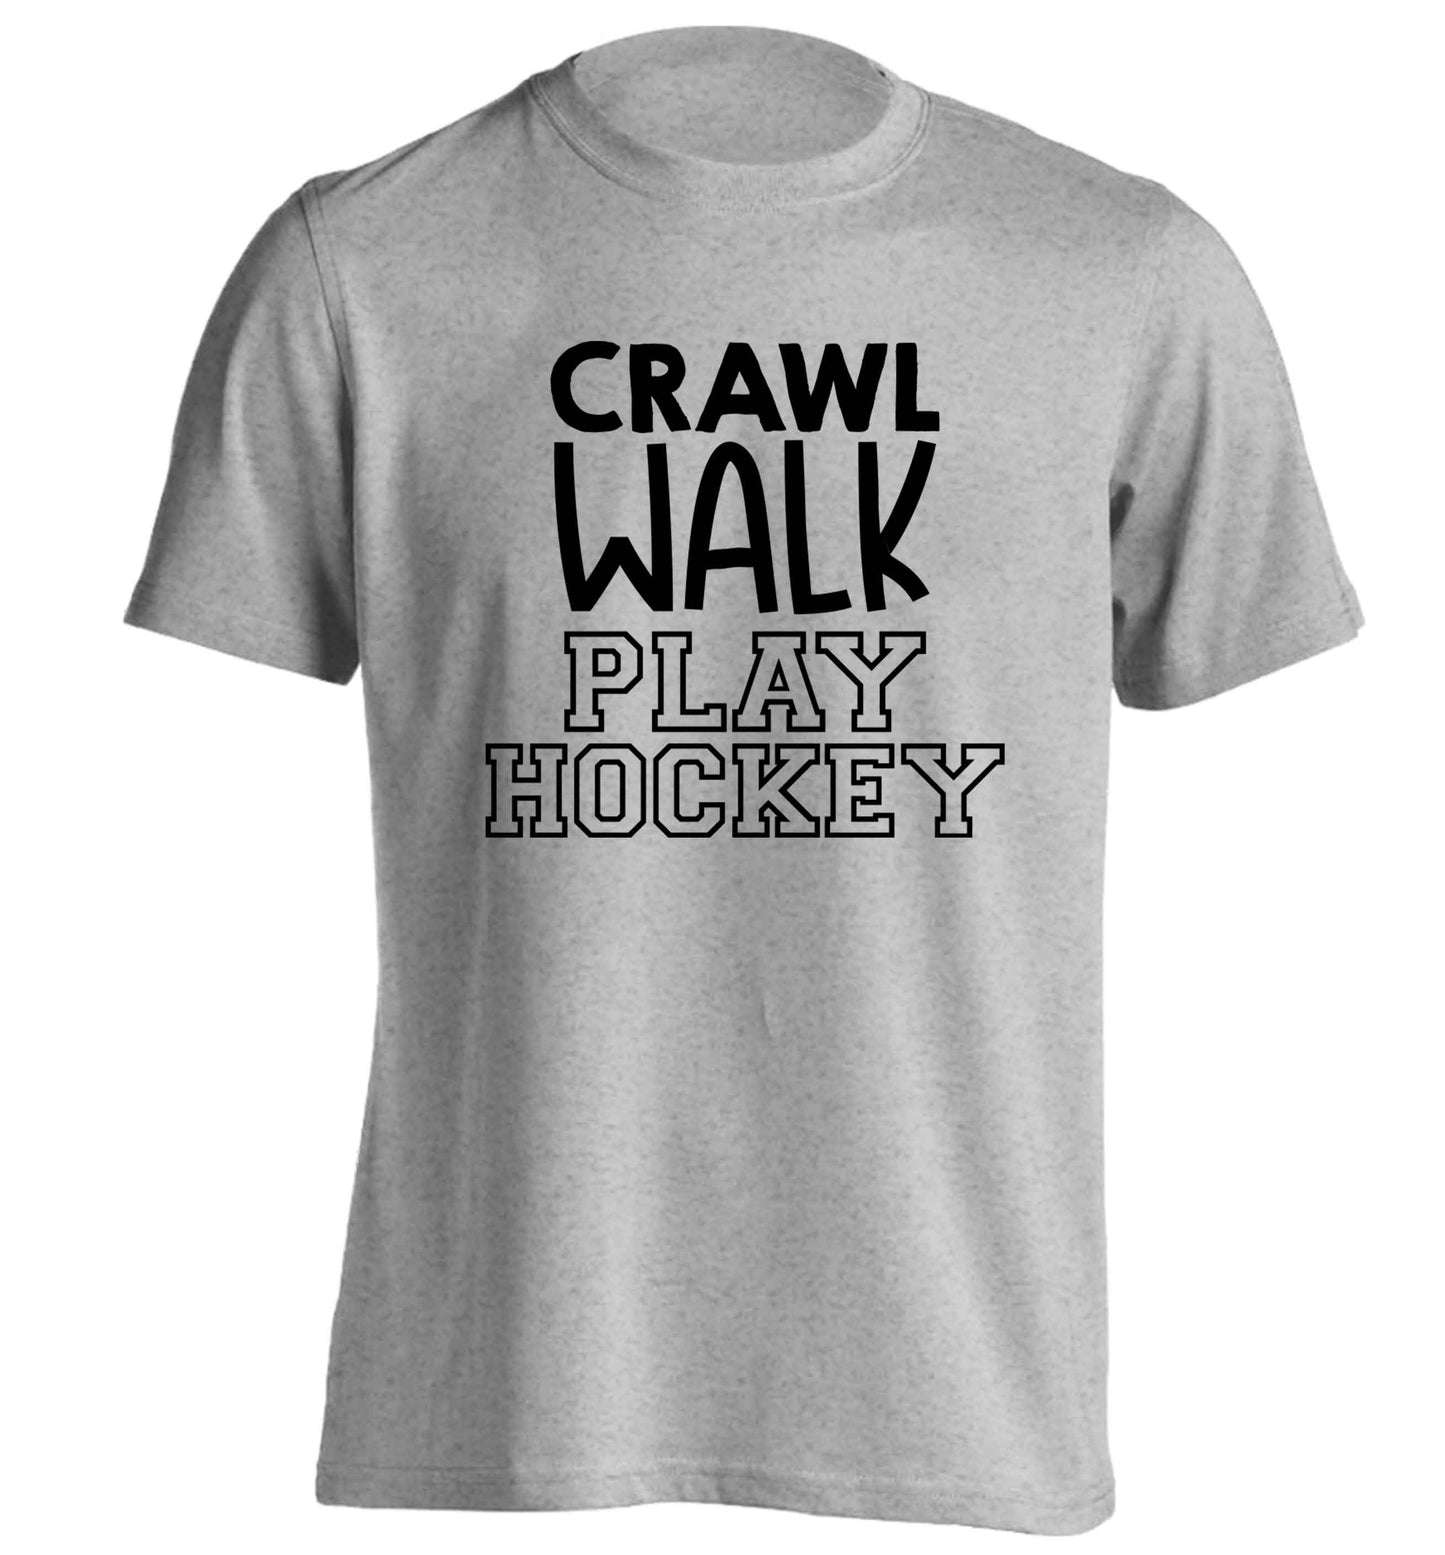 Crawl walk play hockey adults unisex grey Tshirt 2XL